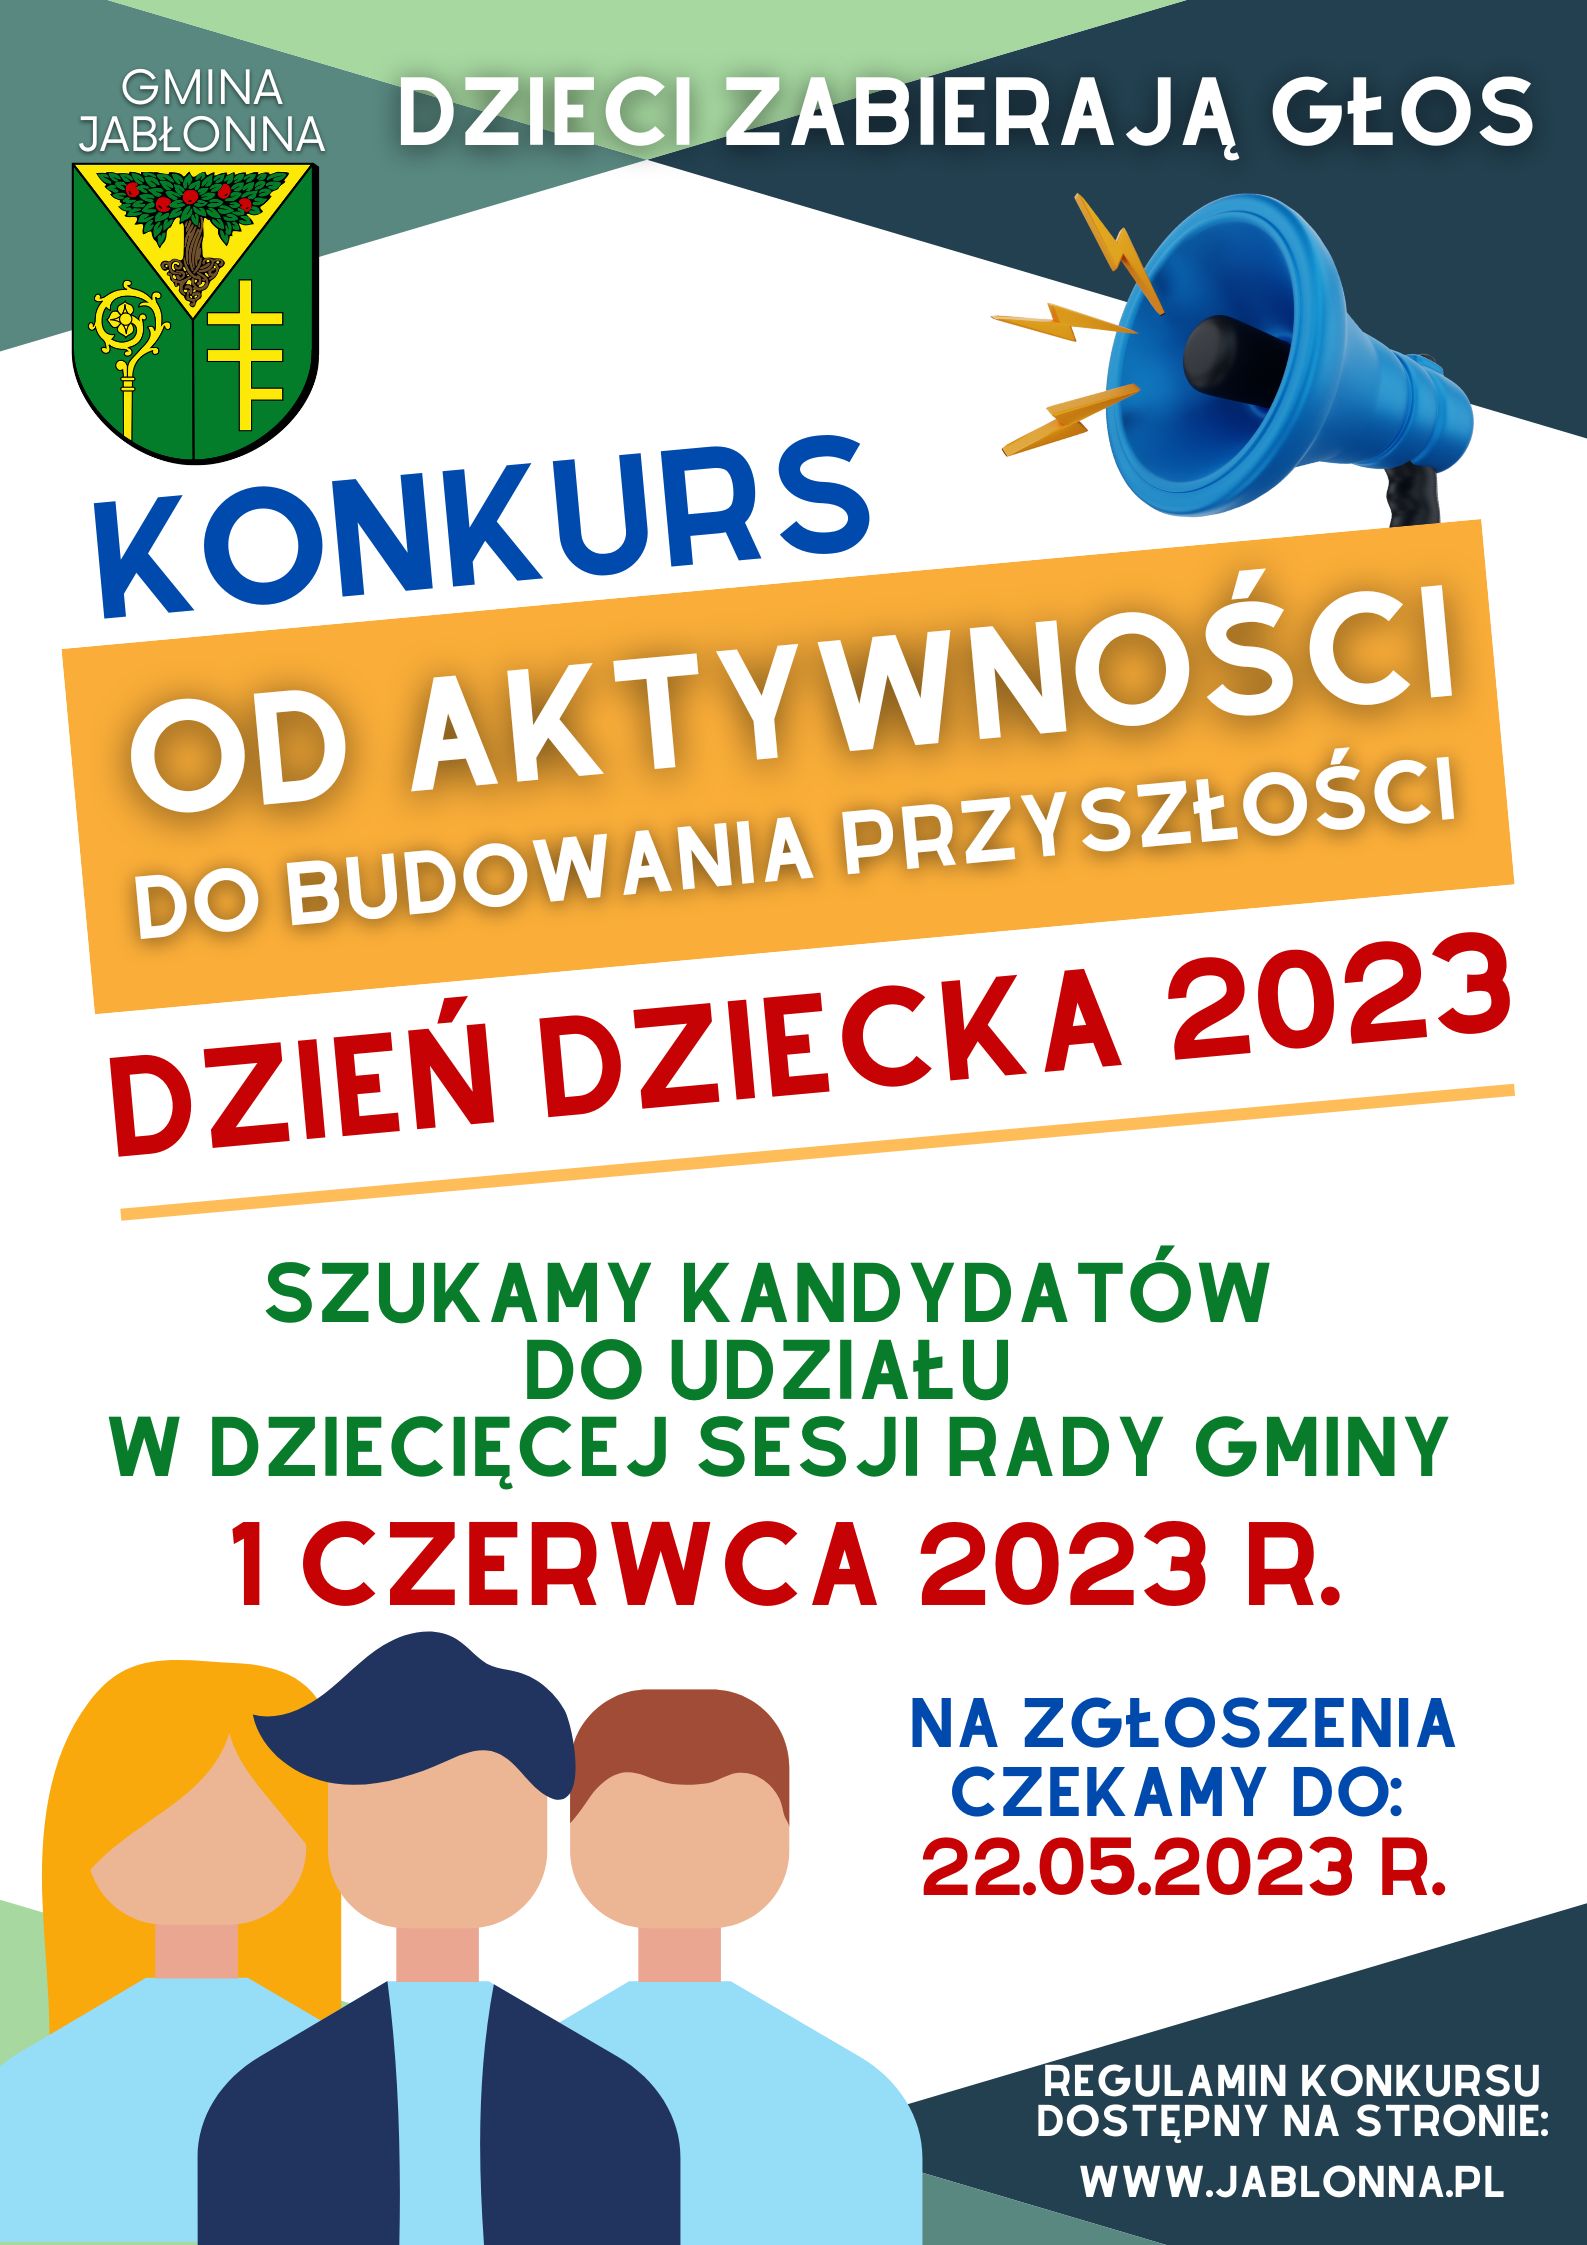 Konkurs od aktywności do budowania przyszłości - Dzień Dziecka 2023. Szukamy kandydatów do udziału w dziecięcej sesji rady gminy -  czerwca 2023 r. na zglosz